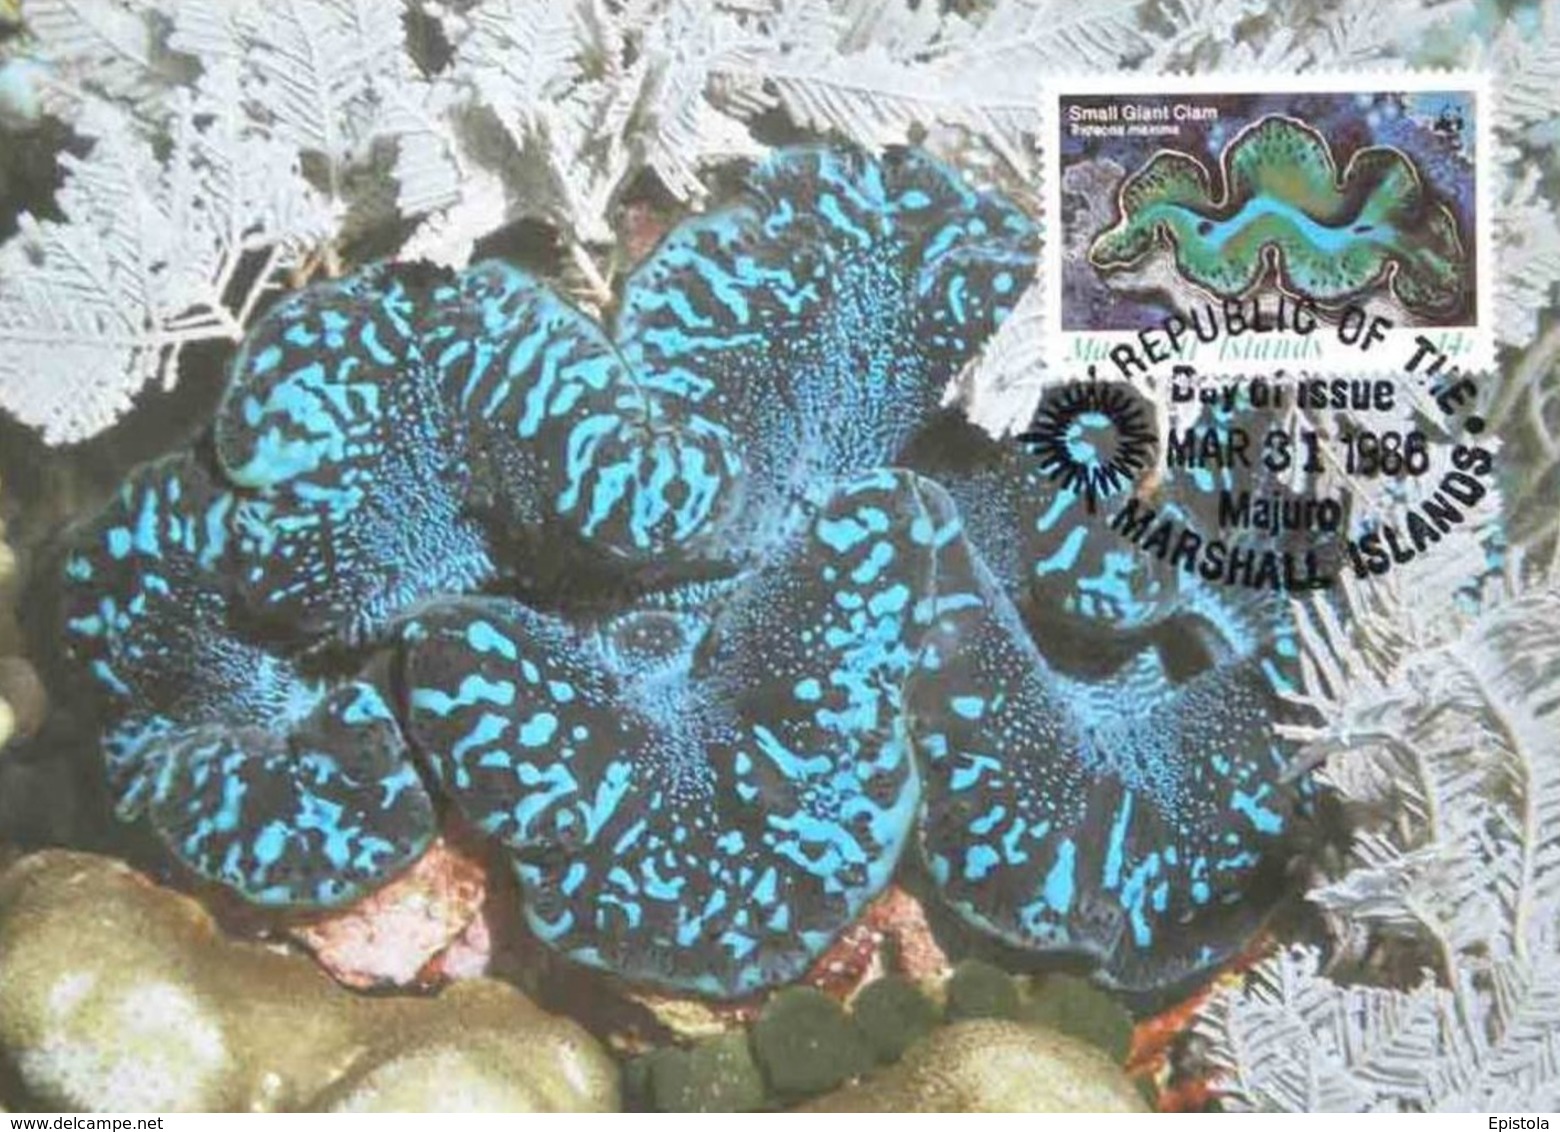 Marshall Islands 1986 Maximum Card Fauna WWF: Bénitier Géant , The Small Giant Clam (Tridecna Maxima) - Marshall Islands